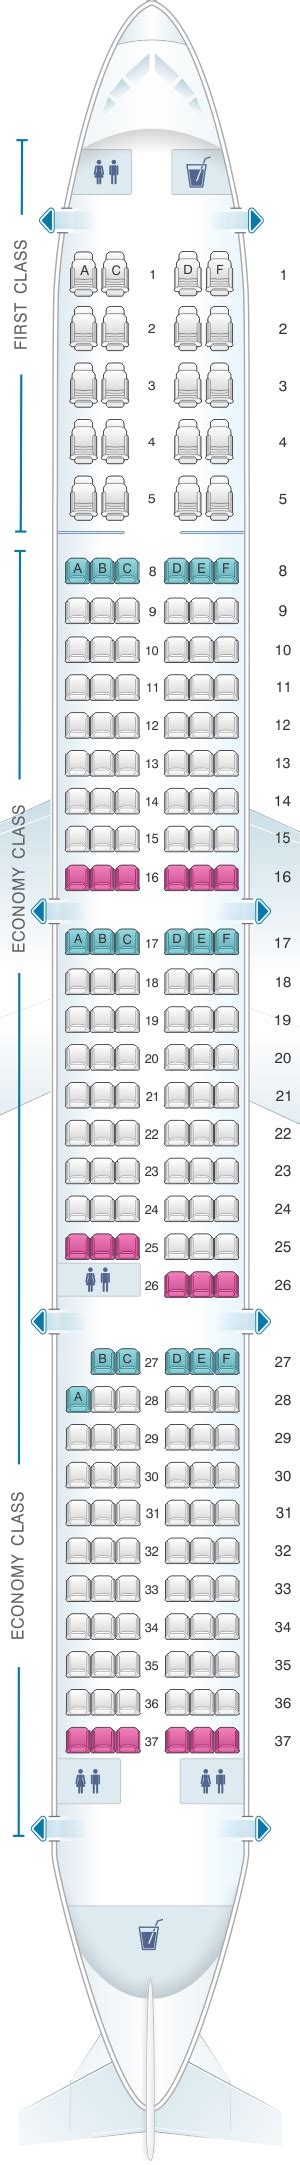 Seatguru Seat Map American Airlines Seatguru Off